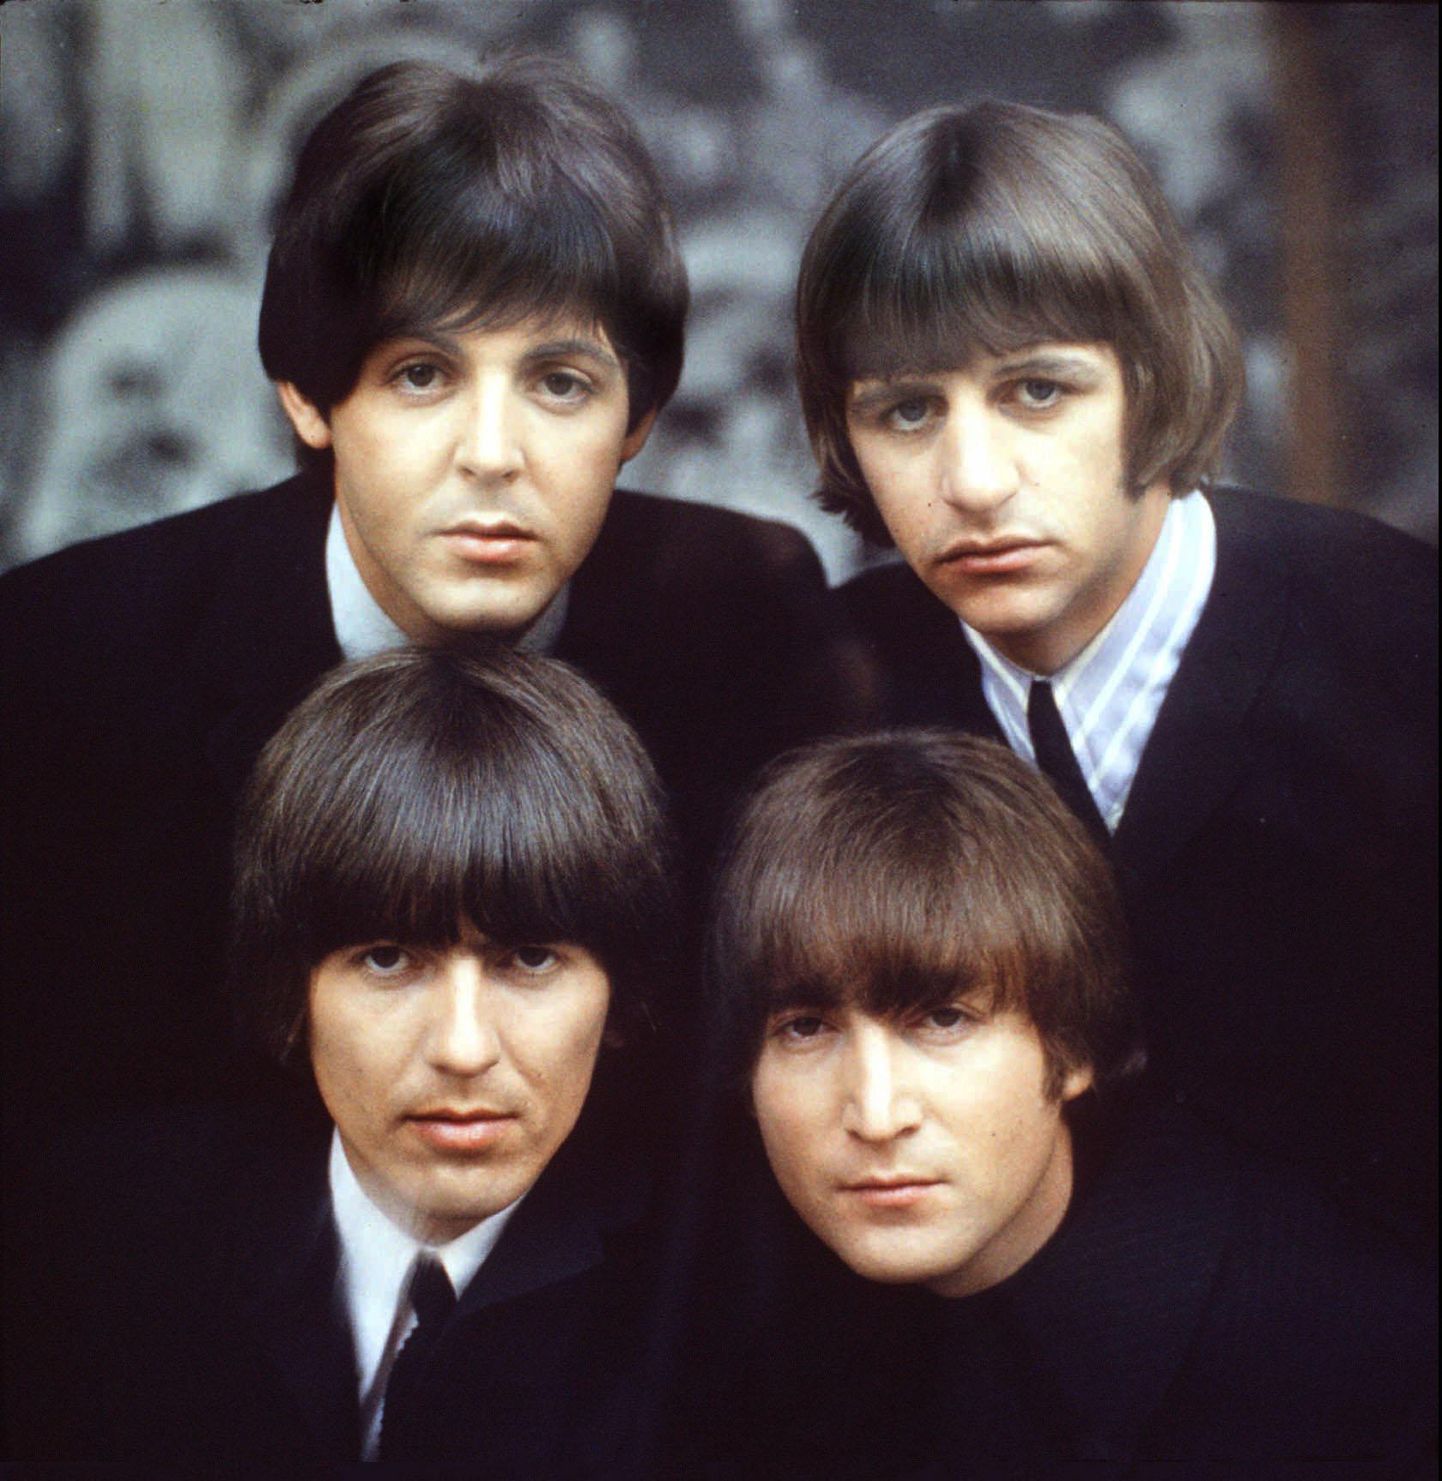 The Beatles: Paul McCartney, Ringo Starr, John Lennon, George Harrison.